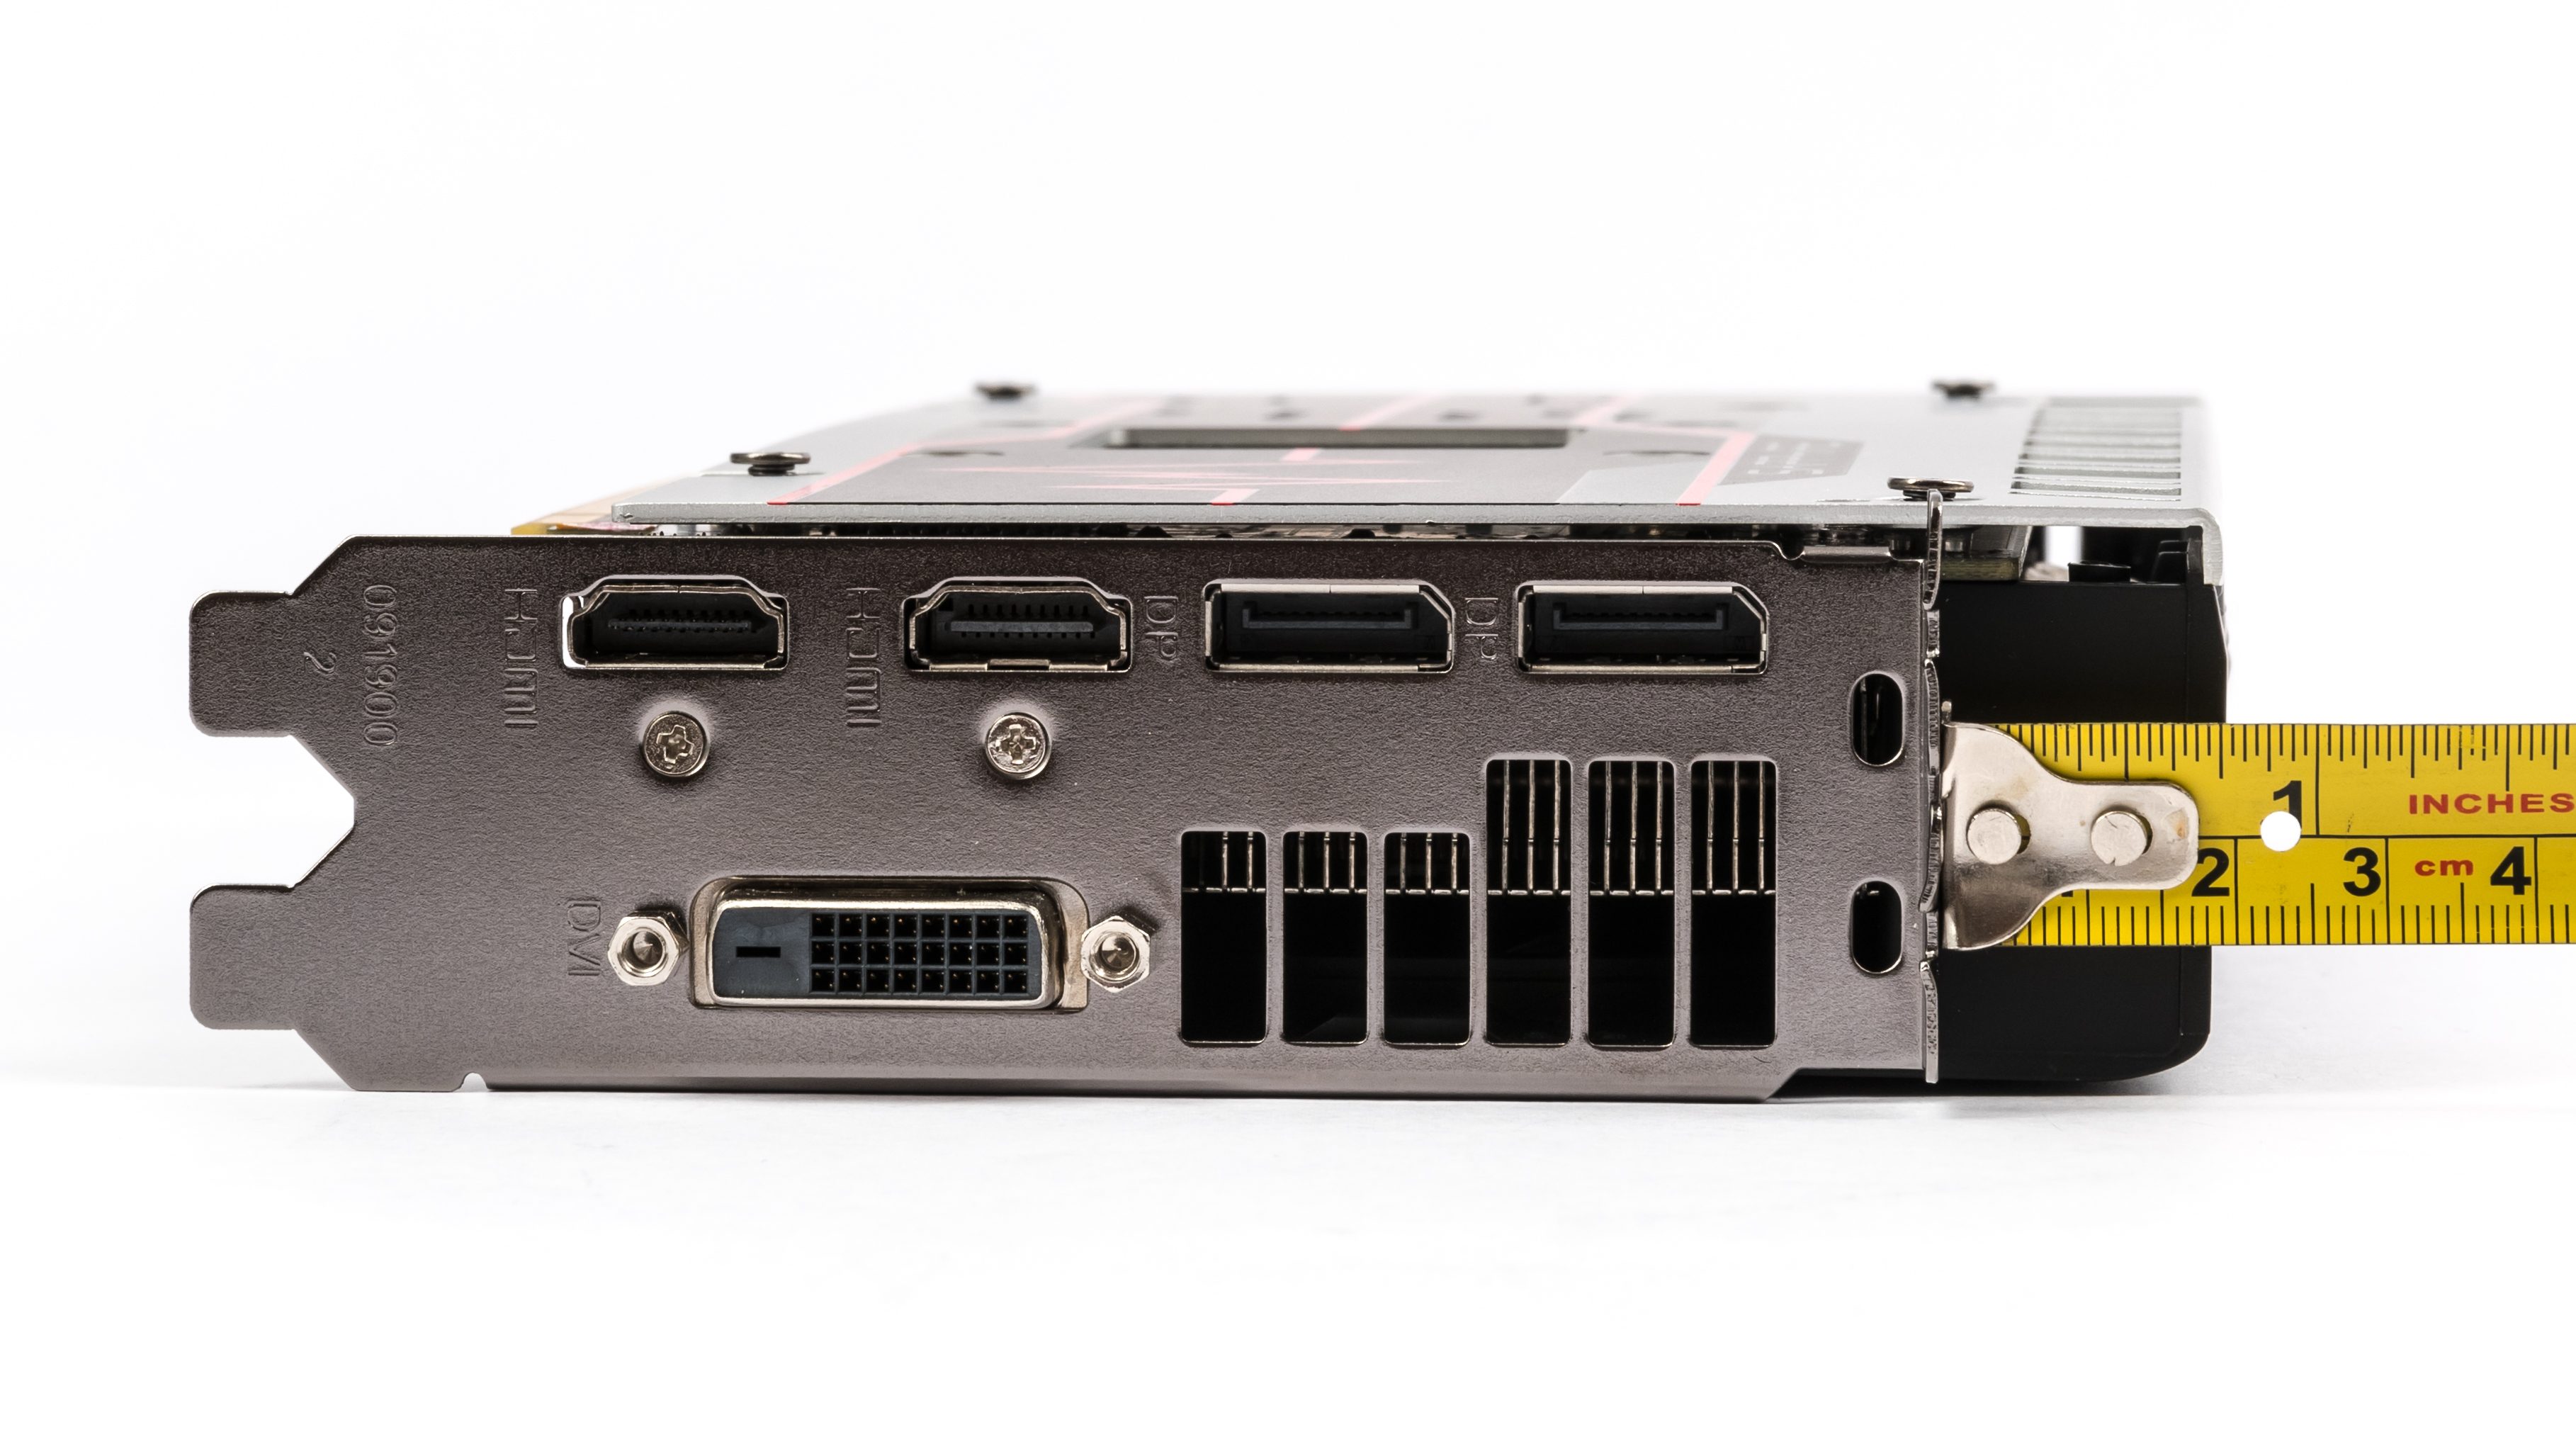 4× Radeon RX 570 4GB v testu: který levný model vybrat?